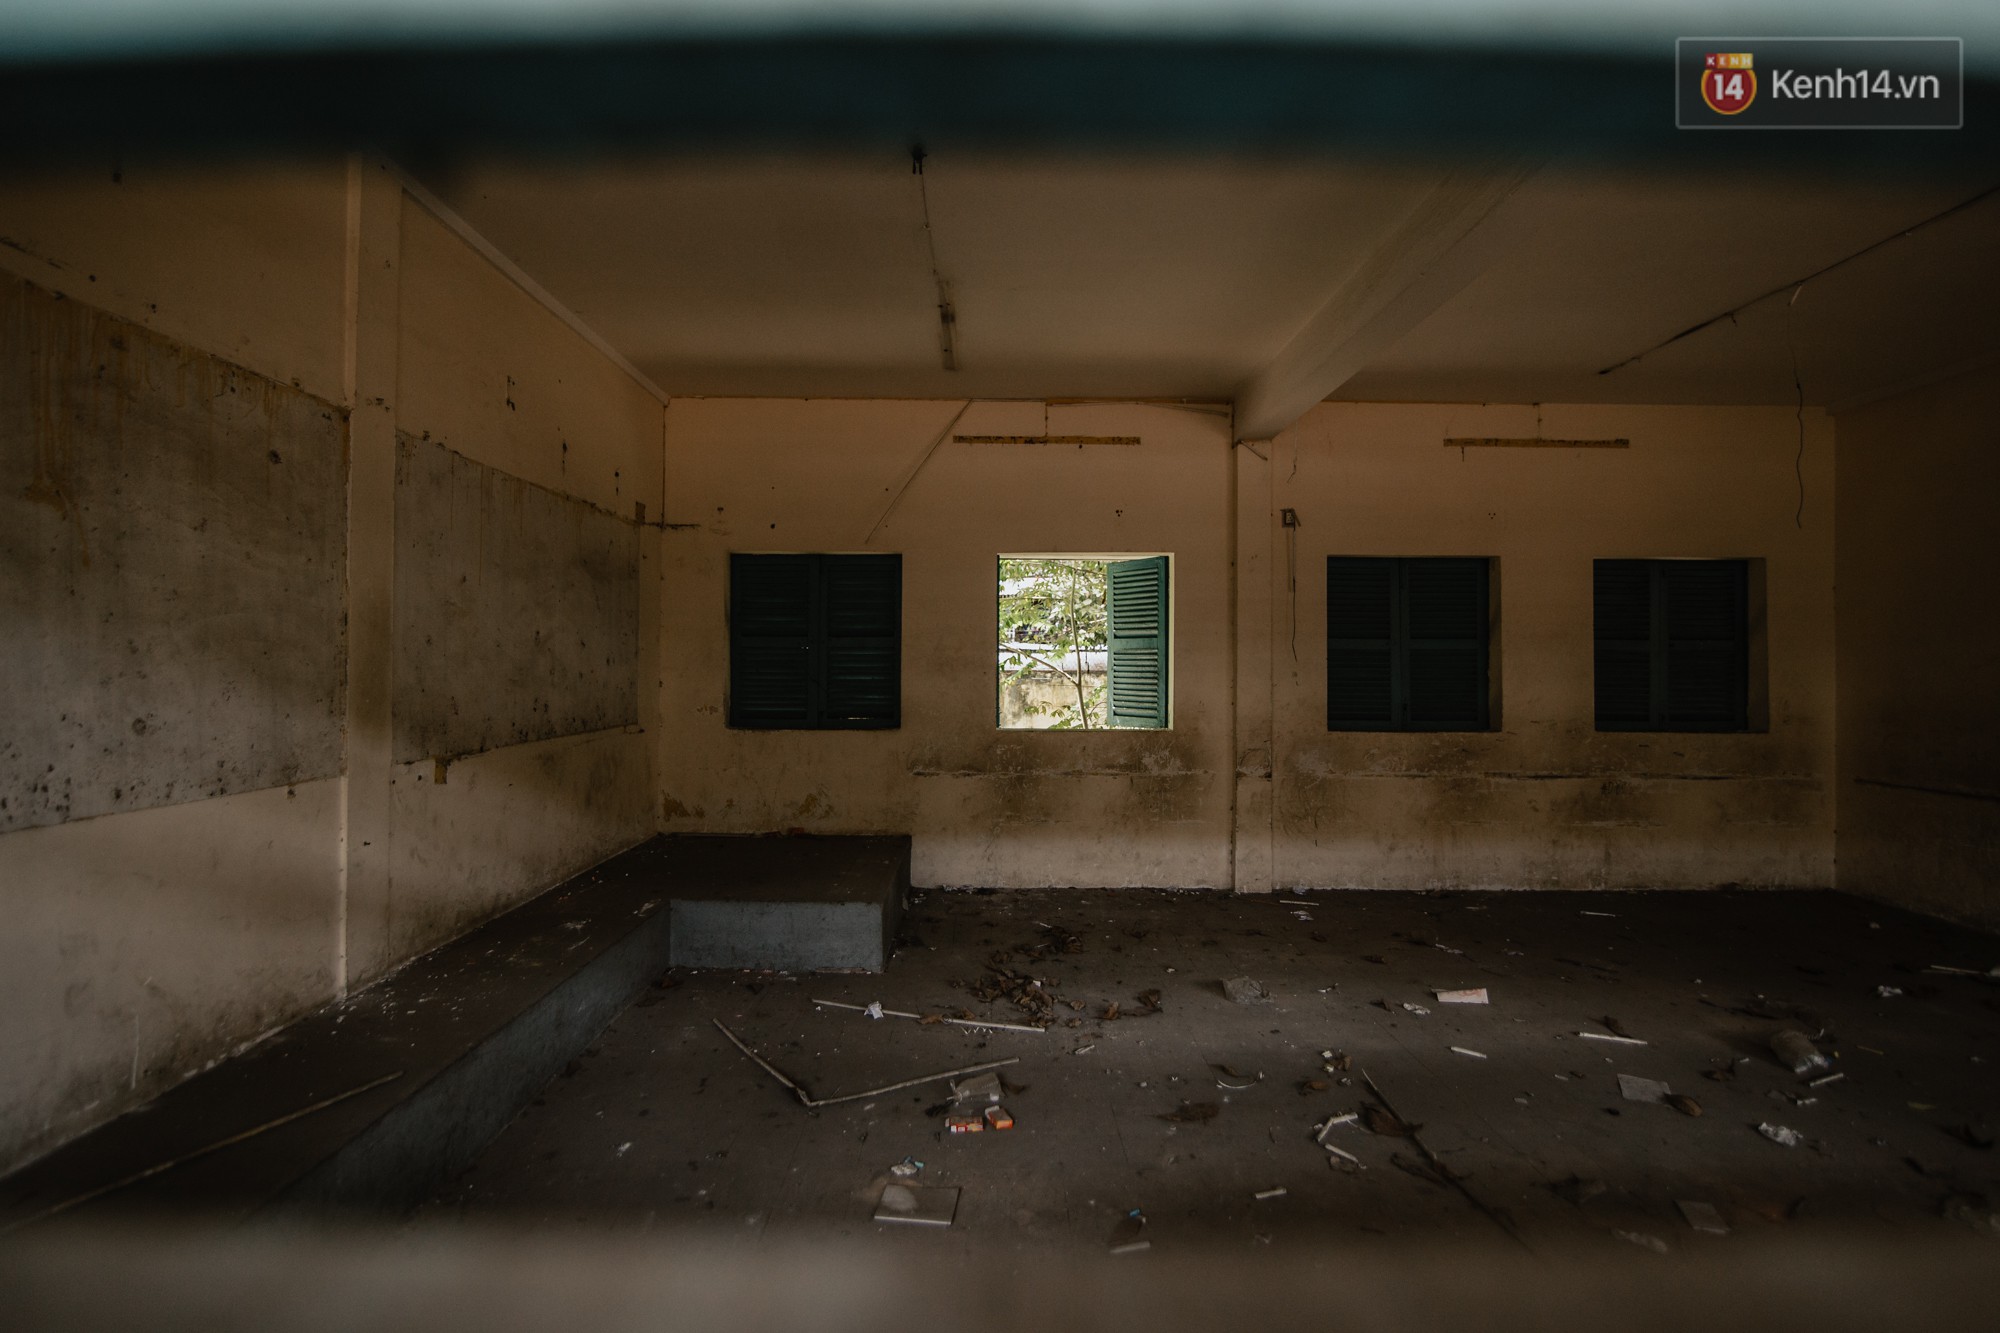 Khung cảnh rợn người bên trong trường học 40 năm tuổi bị bỏ hoang tại Sài Gòn - Ảnh 12.